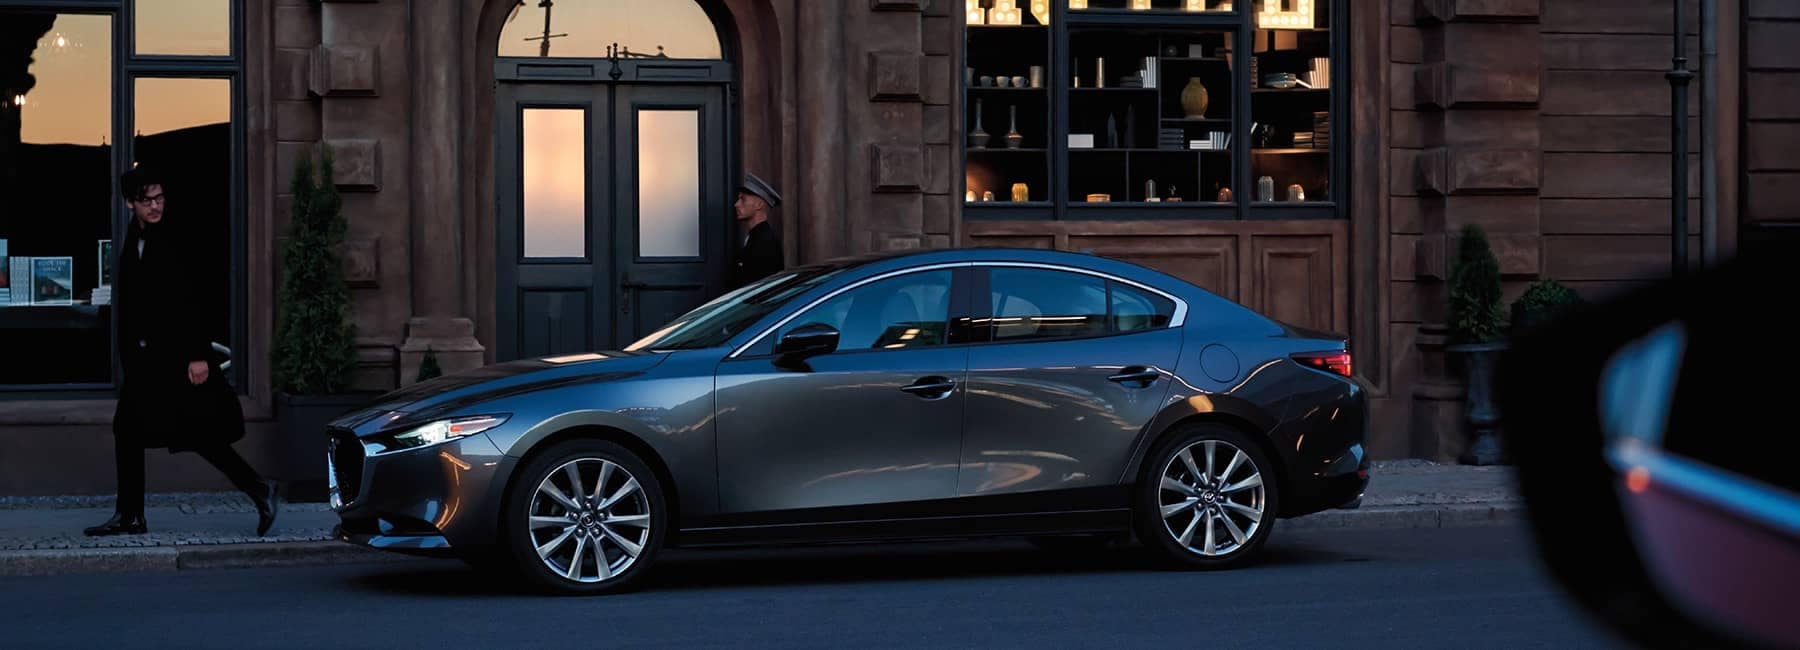 2022 Mazda 3 sedan compact car outside of shop